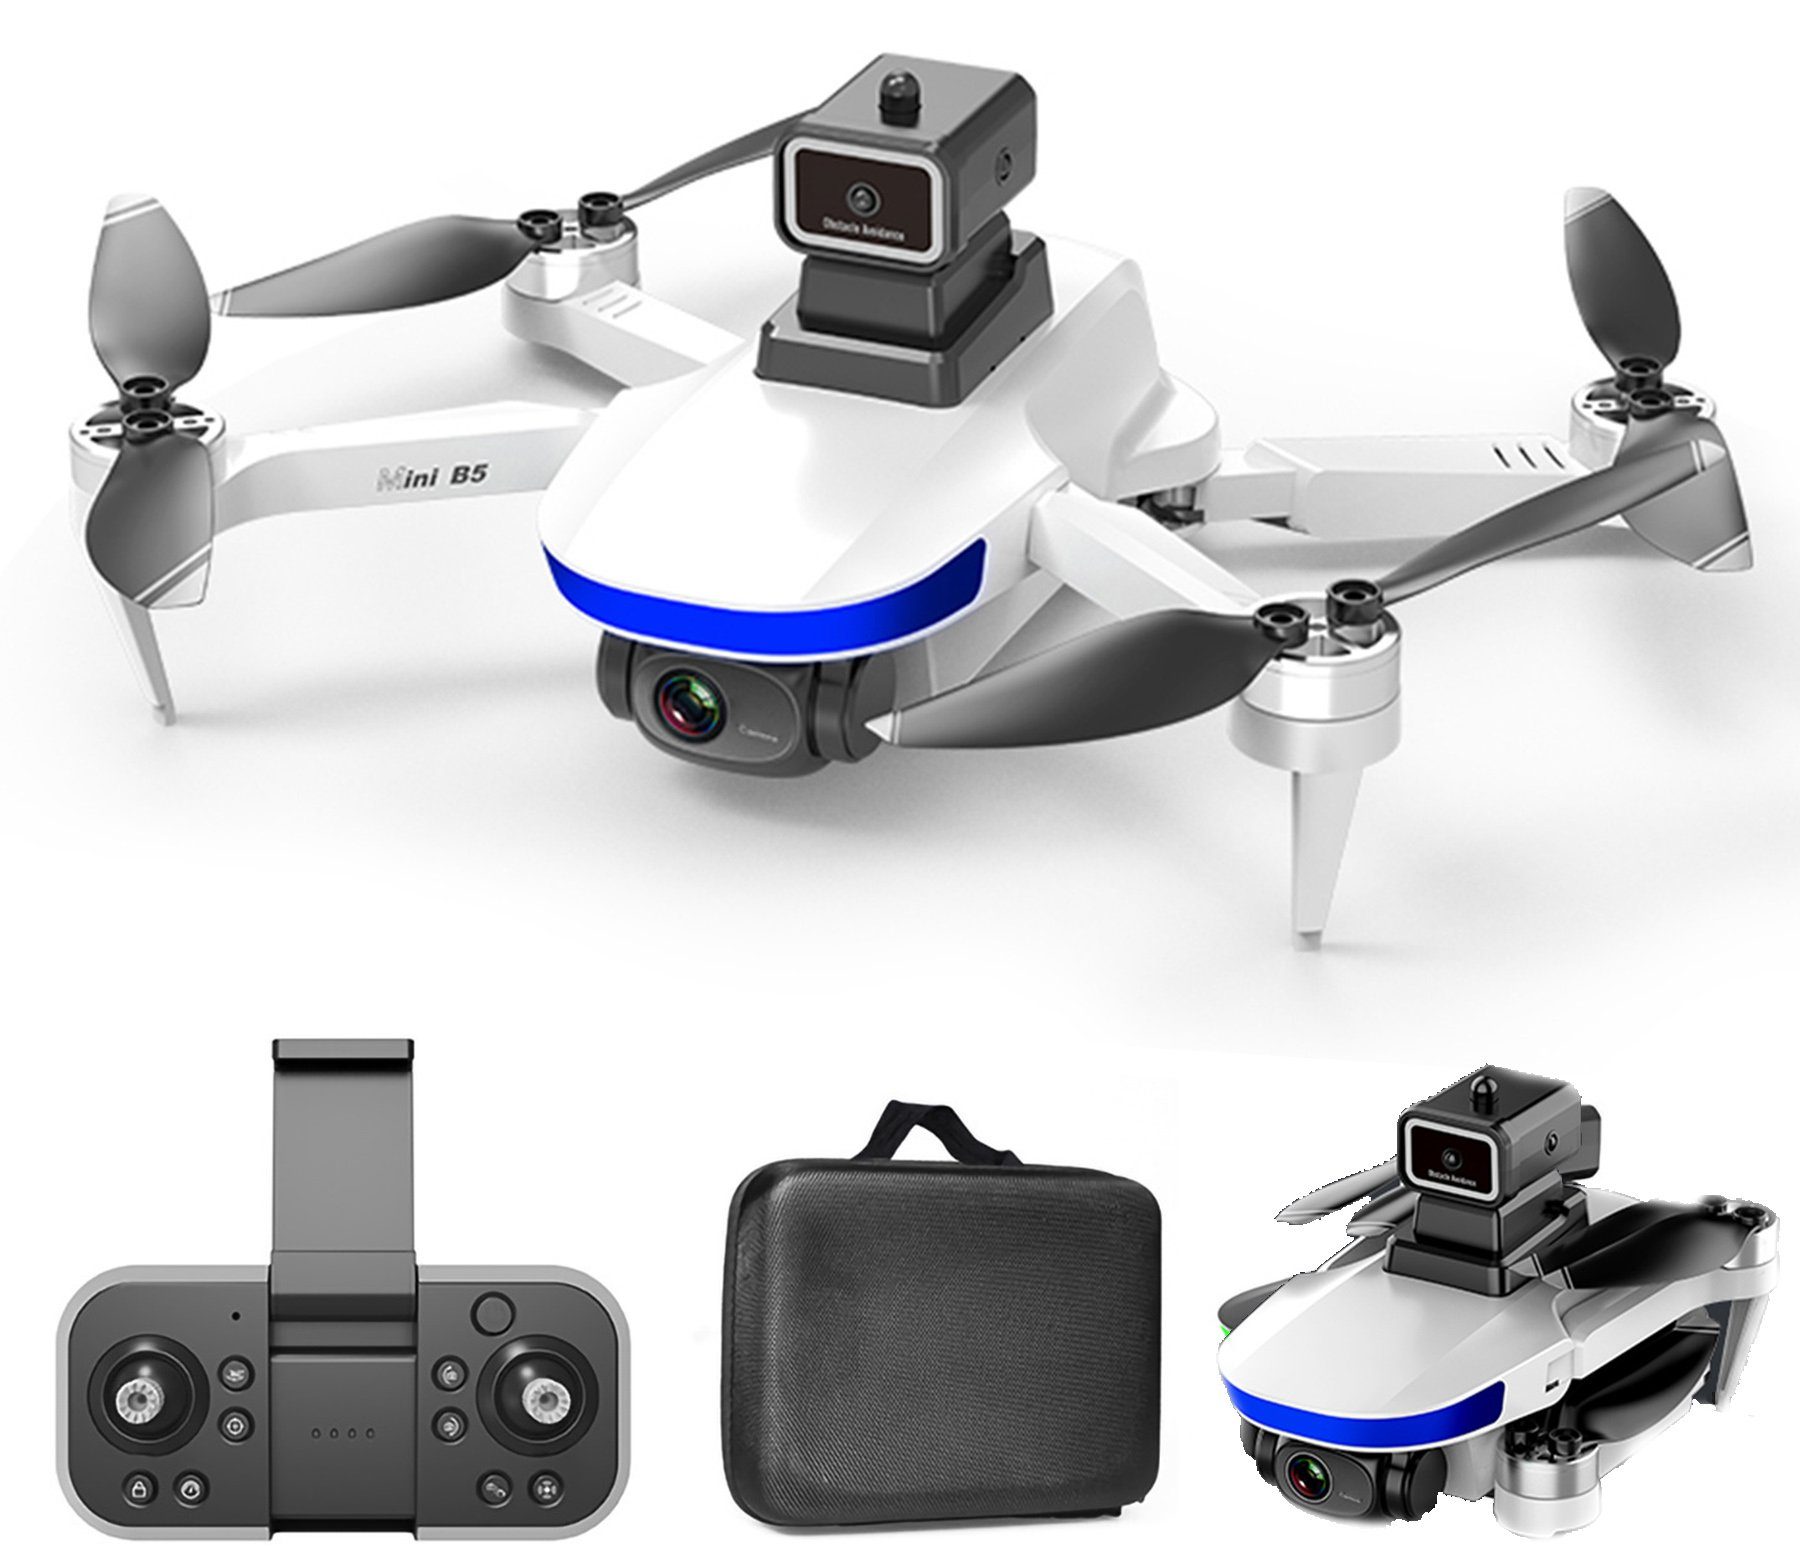 Rutaqian 2,4 GHz ferngesteuerte Drohne Bürstenloser Quadrocopter Anti-Jamming Quadrocopter (4K/6K, HD-kompatible Kamera Luftaufnahmen 4 Kanäle, Mini-Faltdrohne, APP-Handysteuerung Fernbedienung Spielzeugflugzeug, Geeignet für Erwachsene, Kinder und Anfänger) Weiß,4K